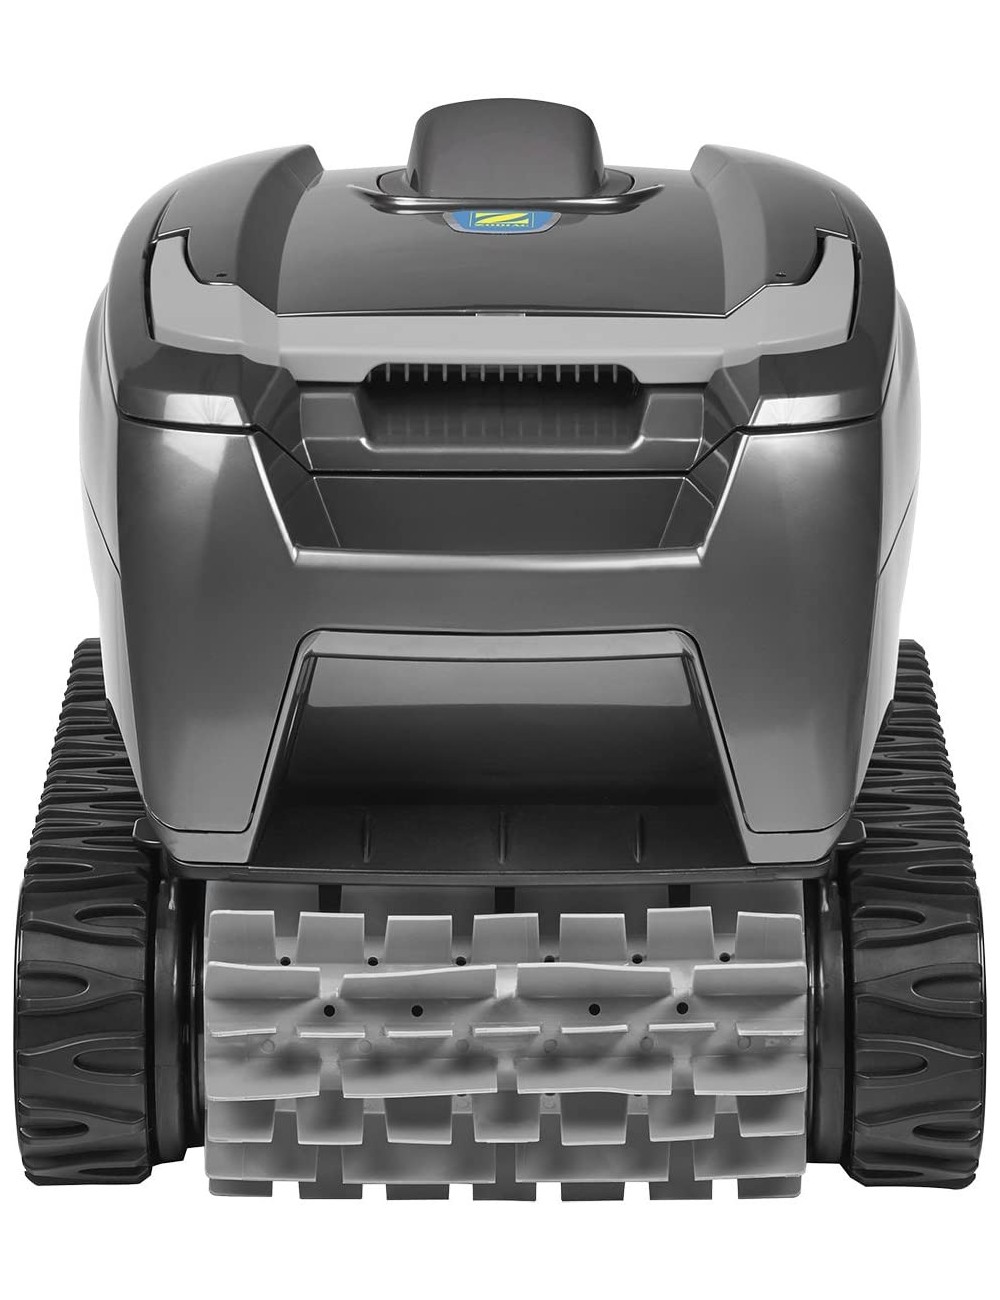 Robot Piscina Zodiac Tornax OT 2100 - Pulizia del Fondo Piscine Interrate e Fuori Terra a Pareti Rigide